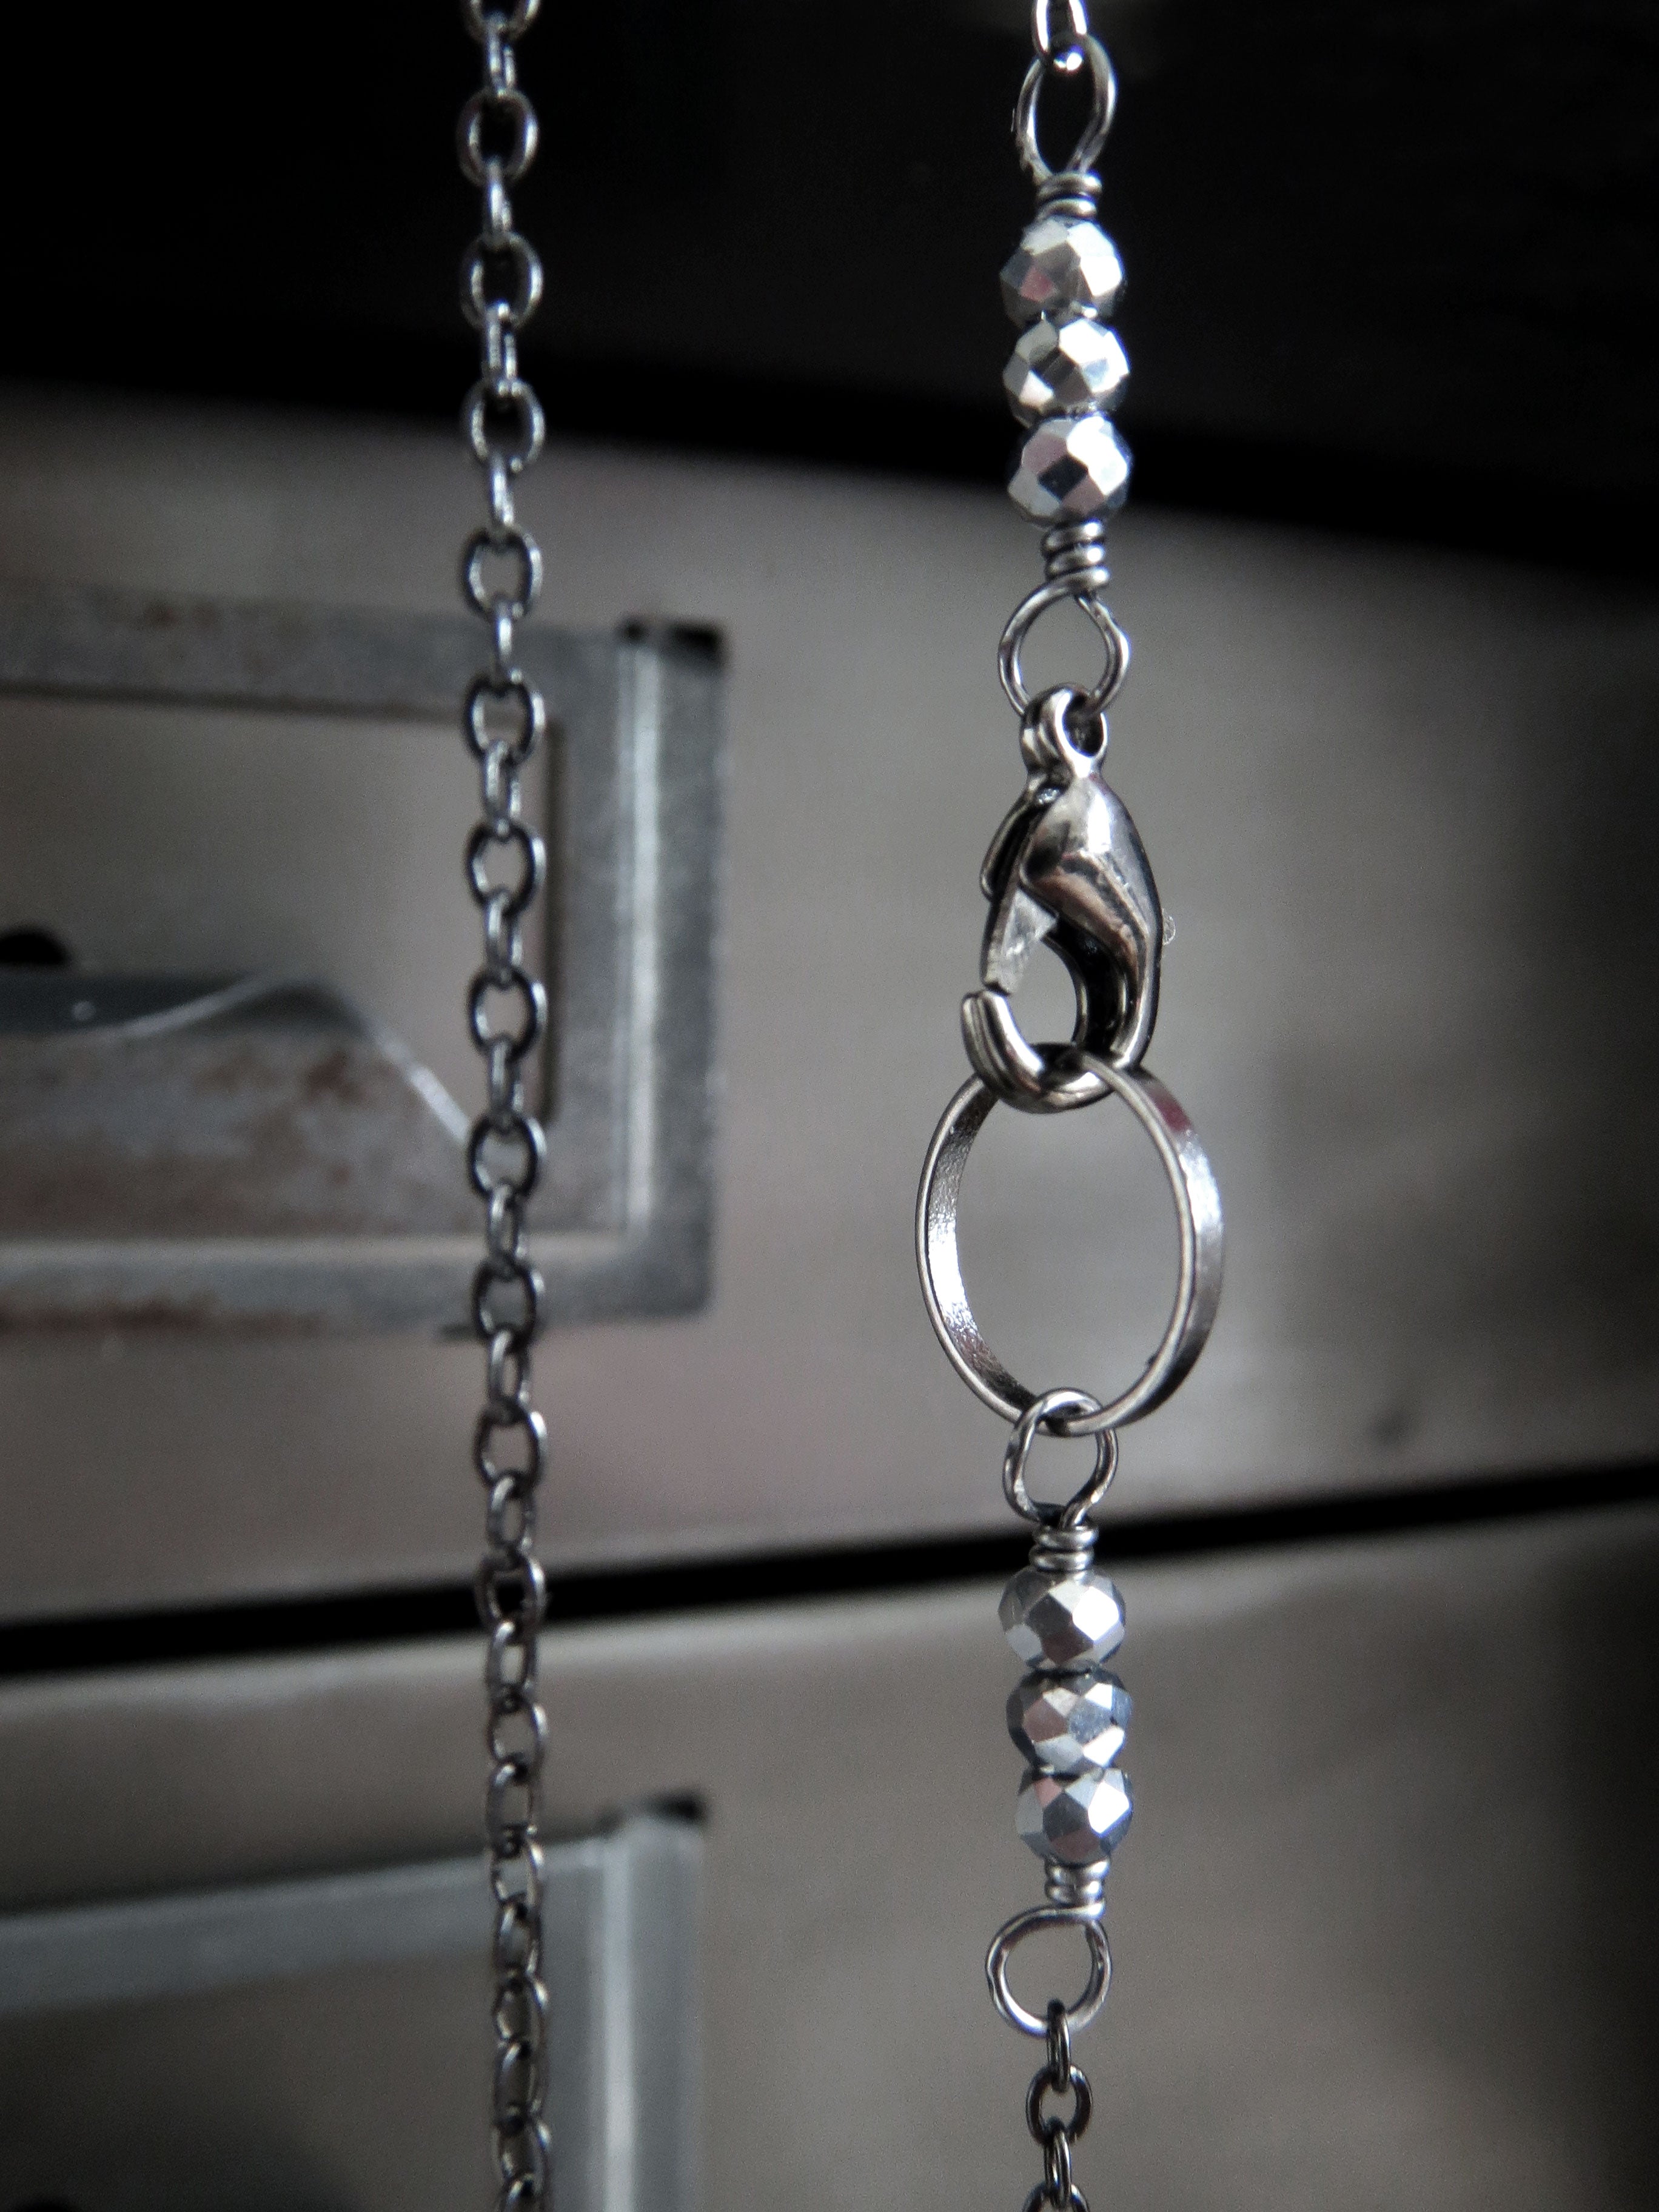 Five Teeny-Tiny Silver Skulls Necklace